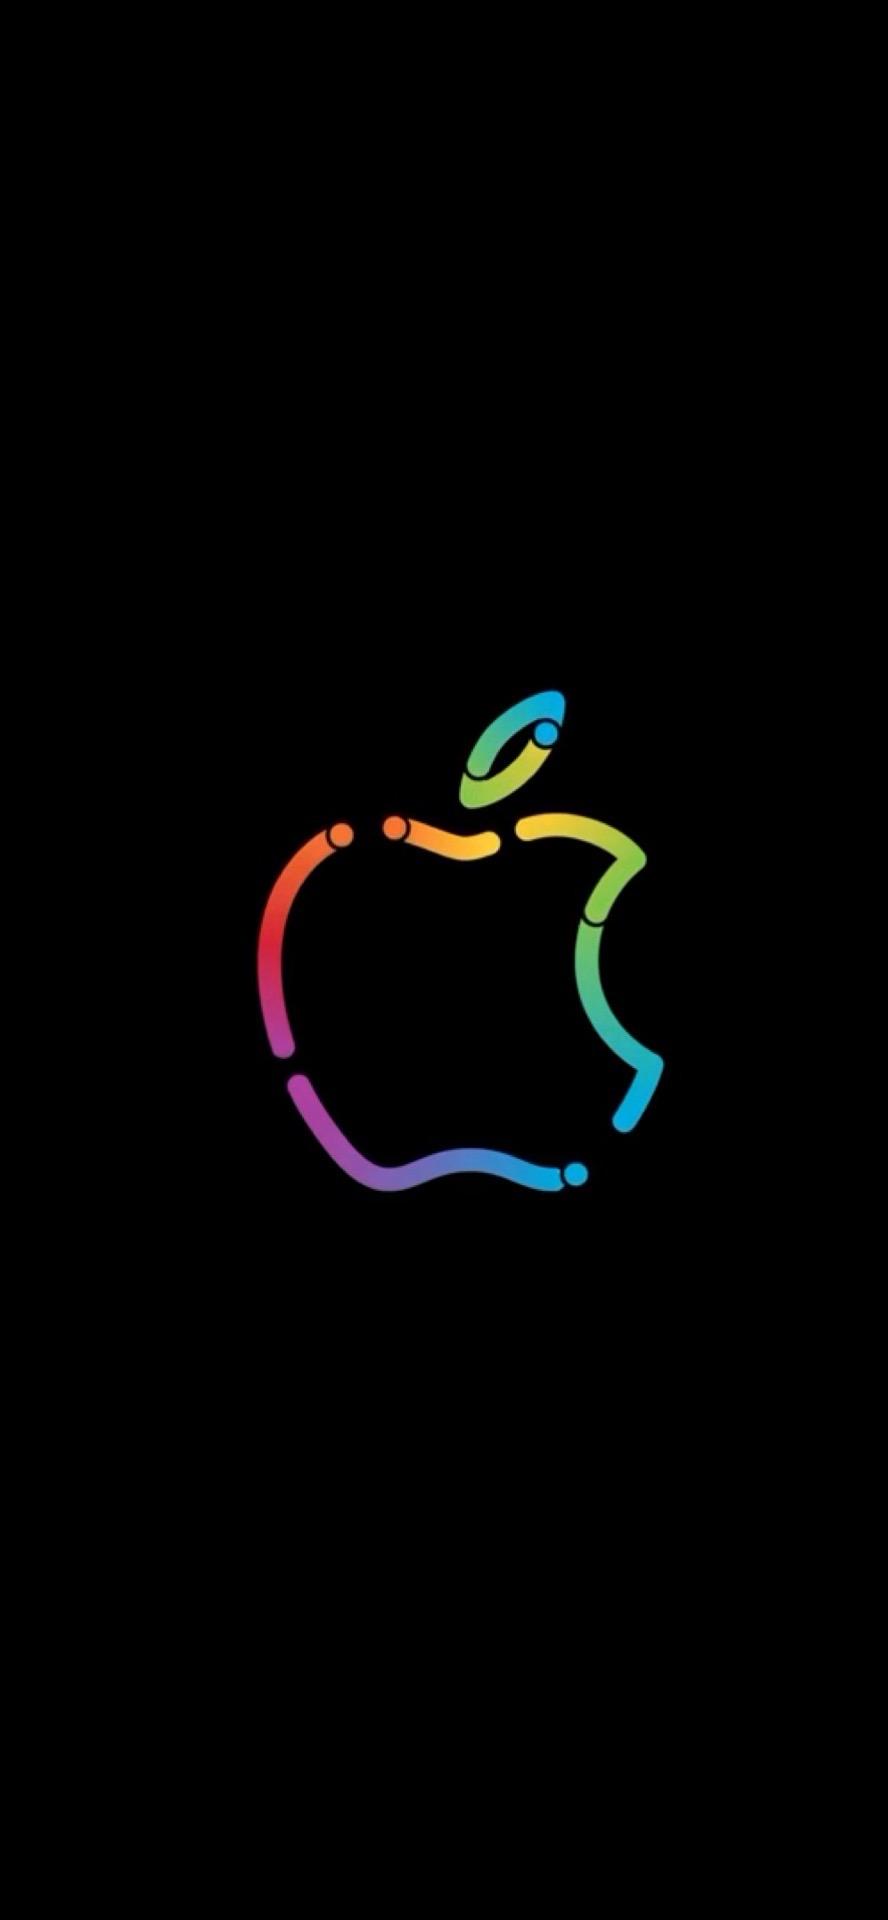 苹果手机logo黑底图片